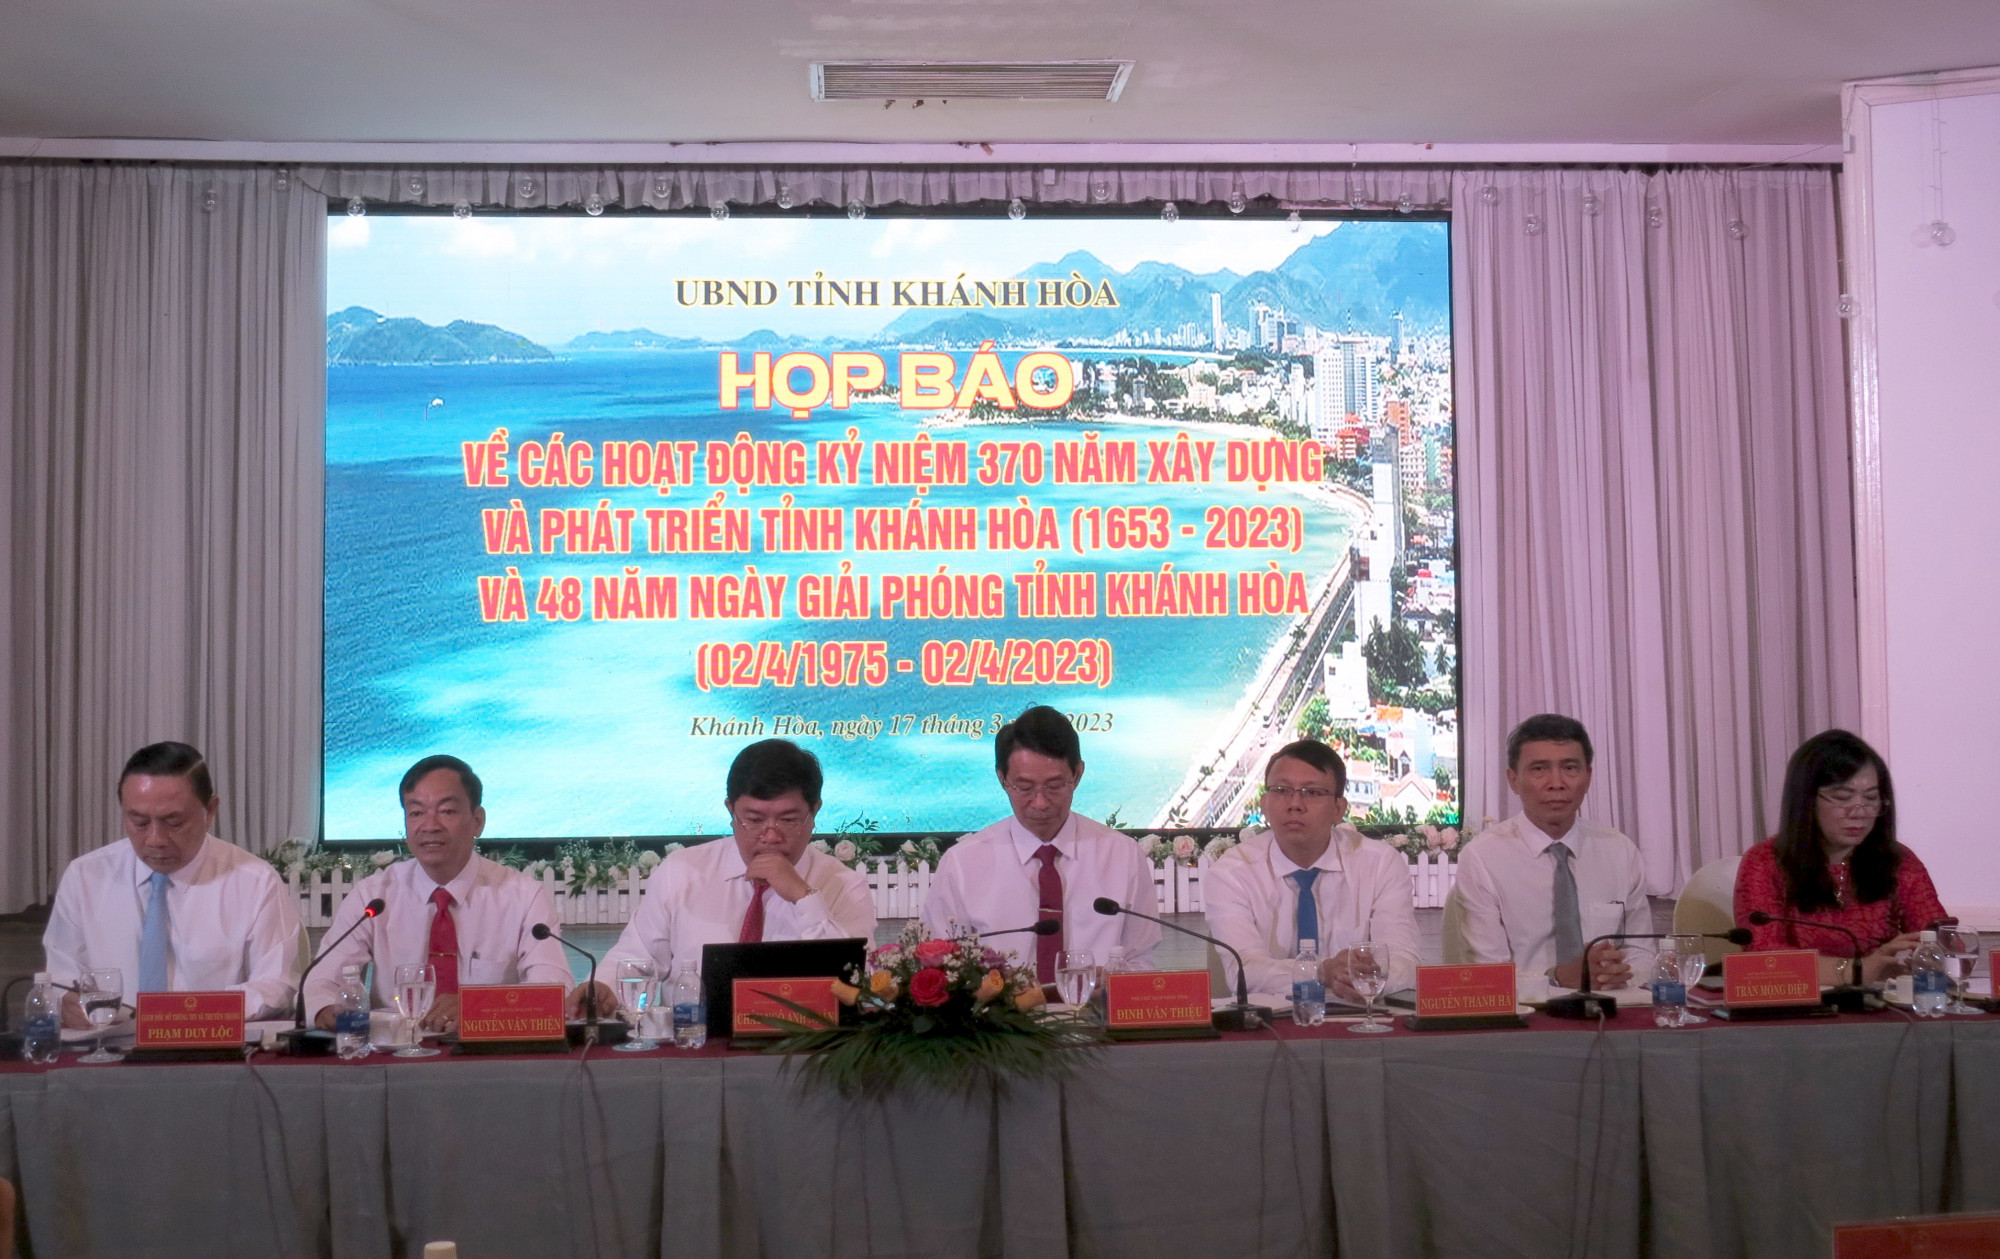 Tại buổi họp báo, UBND tỉnh Khánh Hòa cho biết sẽ bắn pháo hoa tầm thấp 15 phút trong lễ kỷ niệm 370 năm xây dựng và phát triển tỉnh